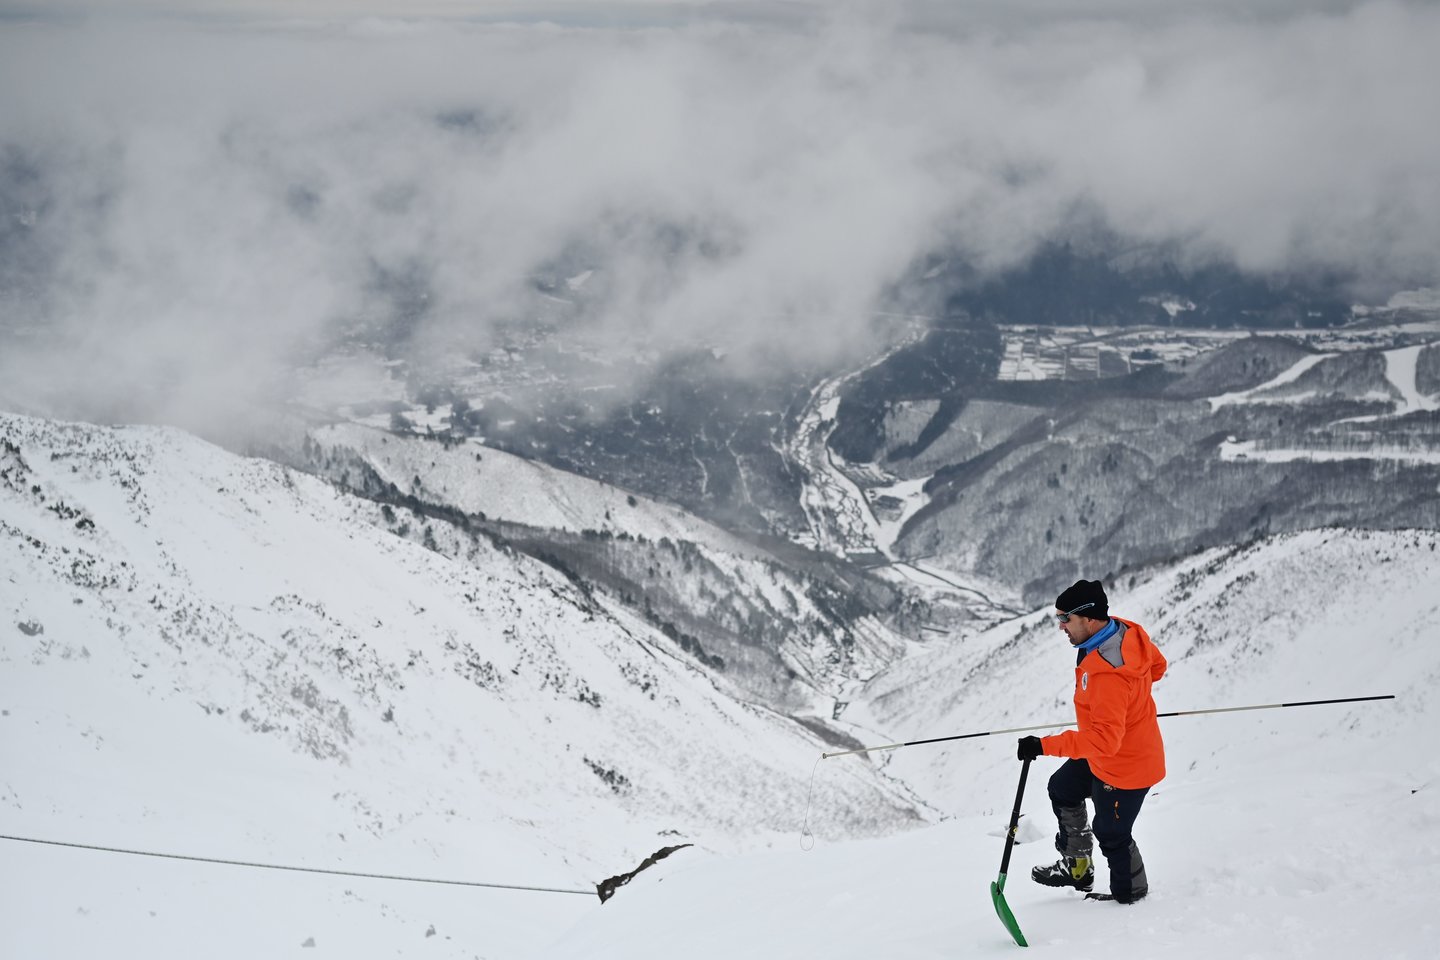  Vienas Prancūzijos pilietis ketvirtadienį buvo kritiškai sužeistas viename šiaurės Japonijos kalnų slidinėjimo kurorte lavinai užgriuvus aštuonių prancūzų turistų grupę, pranešė vienas vietos pareigūnas.<br> AFP/Scanpix nuotr.